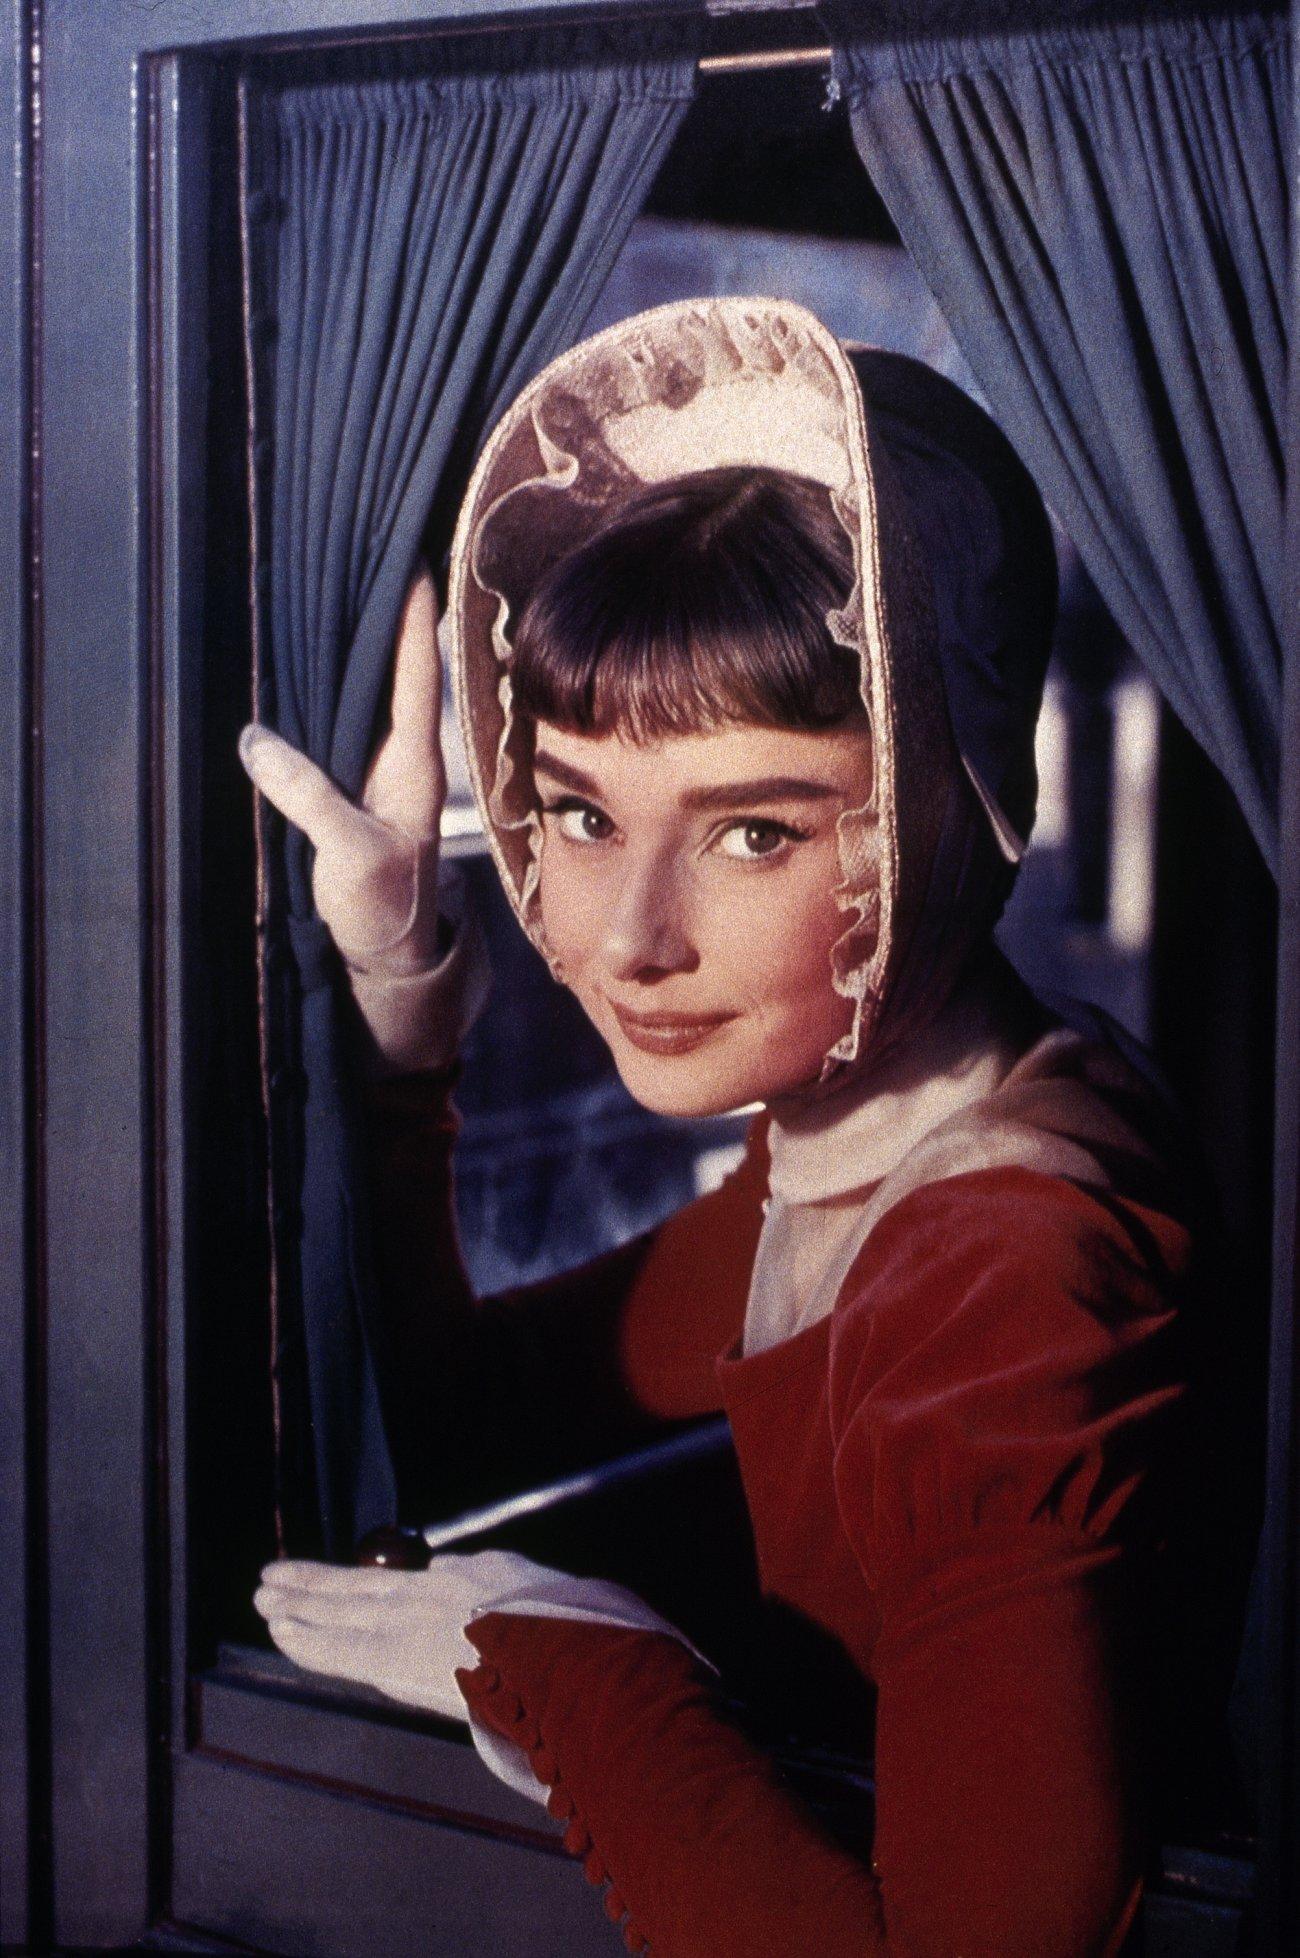 Audrey Hepburn wallpaper №11058.